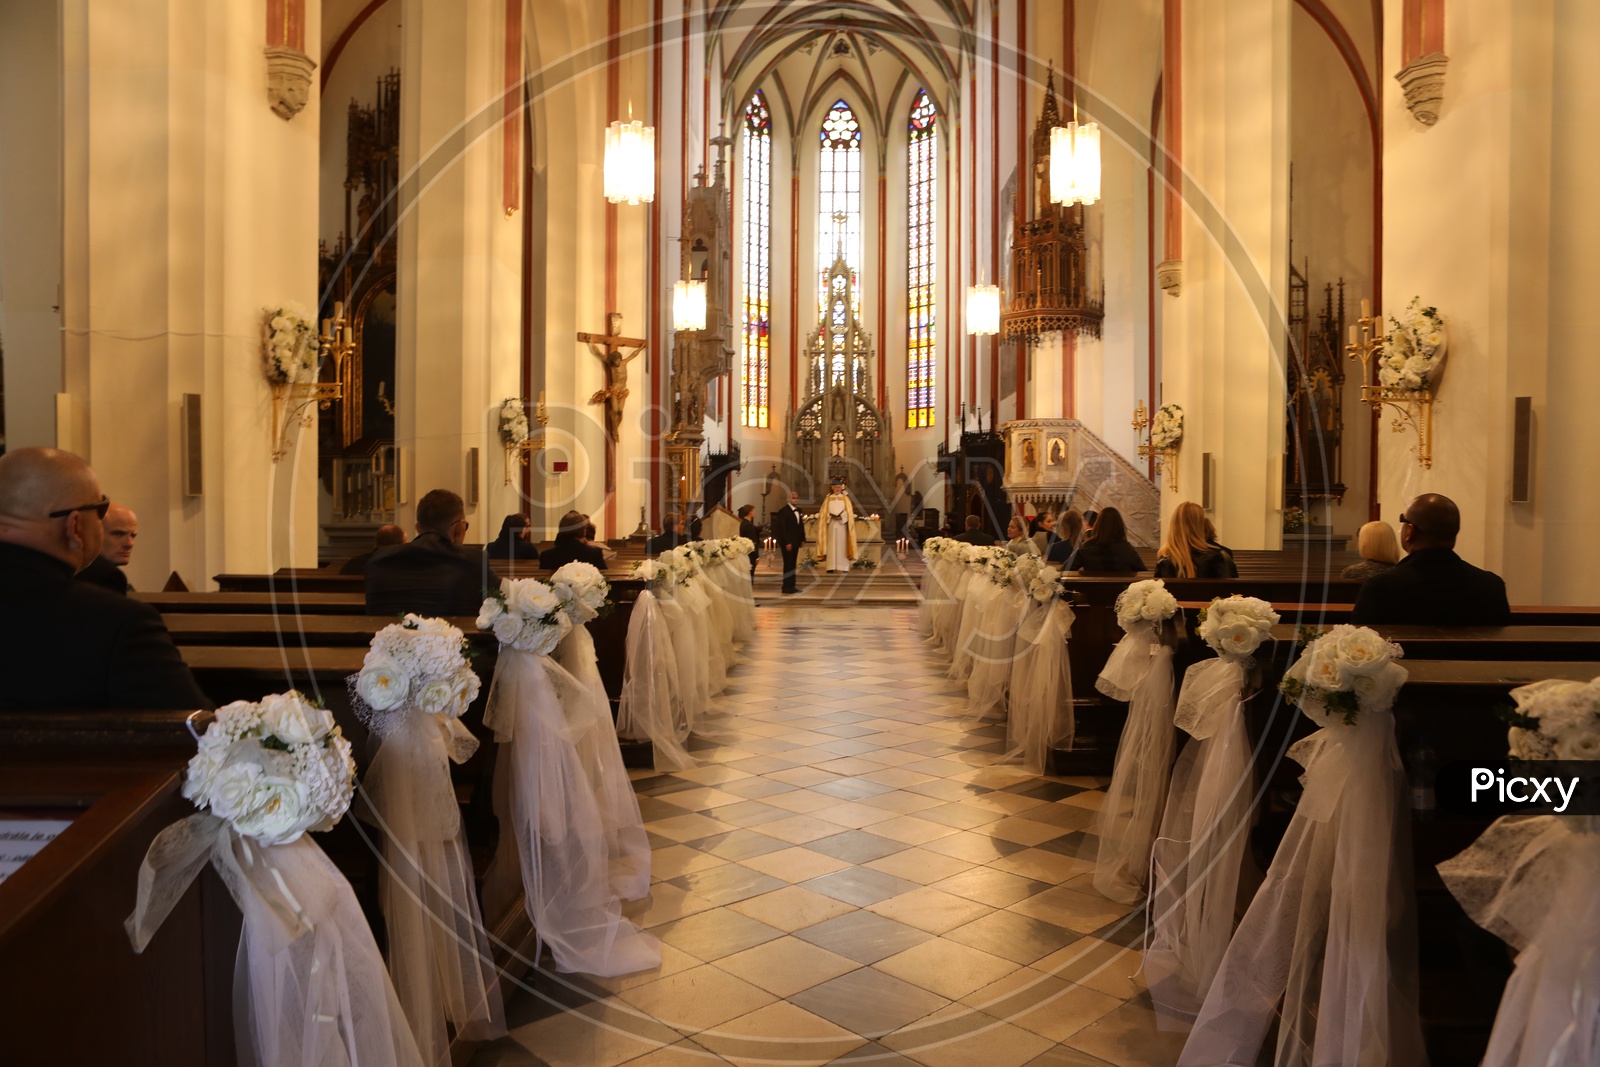 Wedding ceremony in a Church